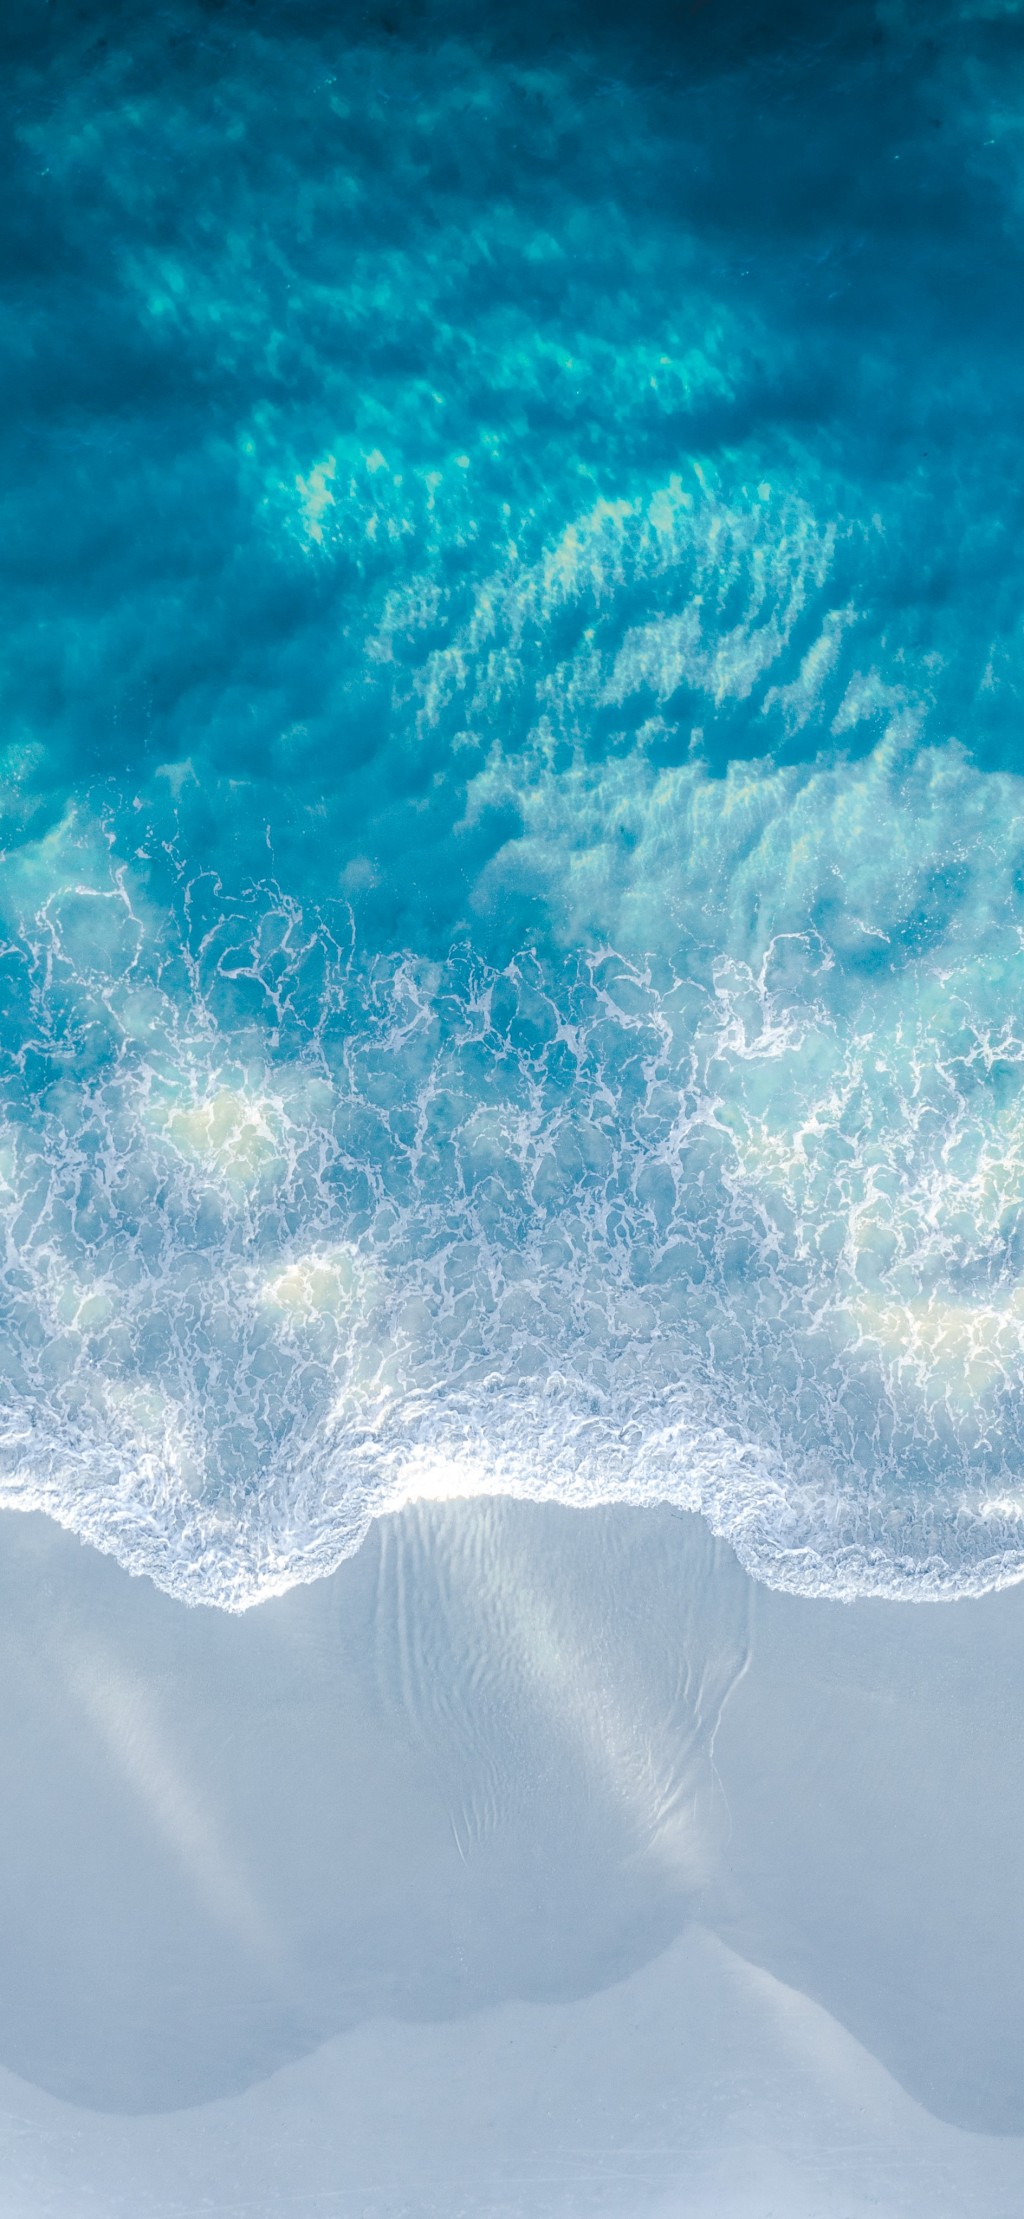 蓝色海洋风景手机壁纸